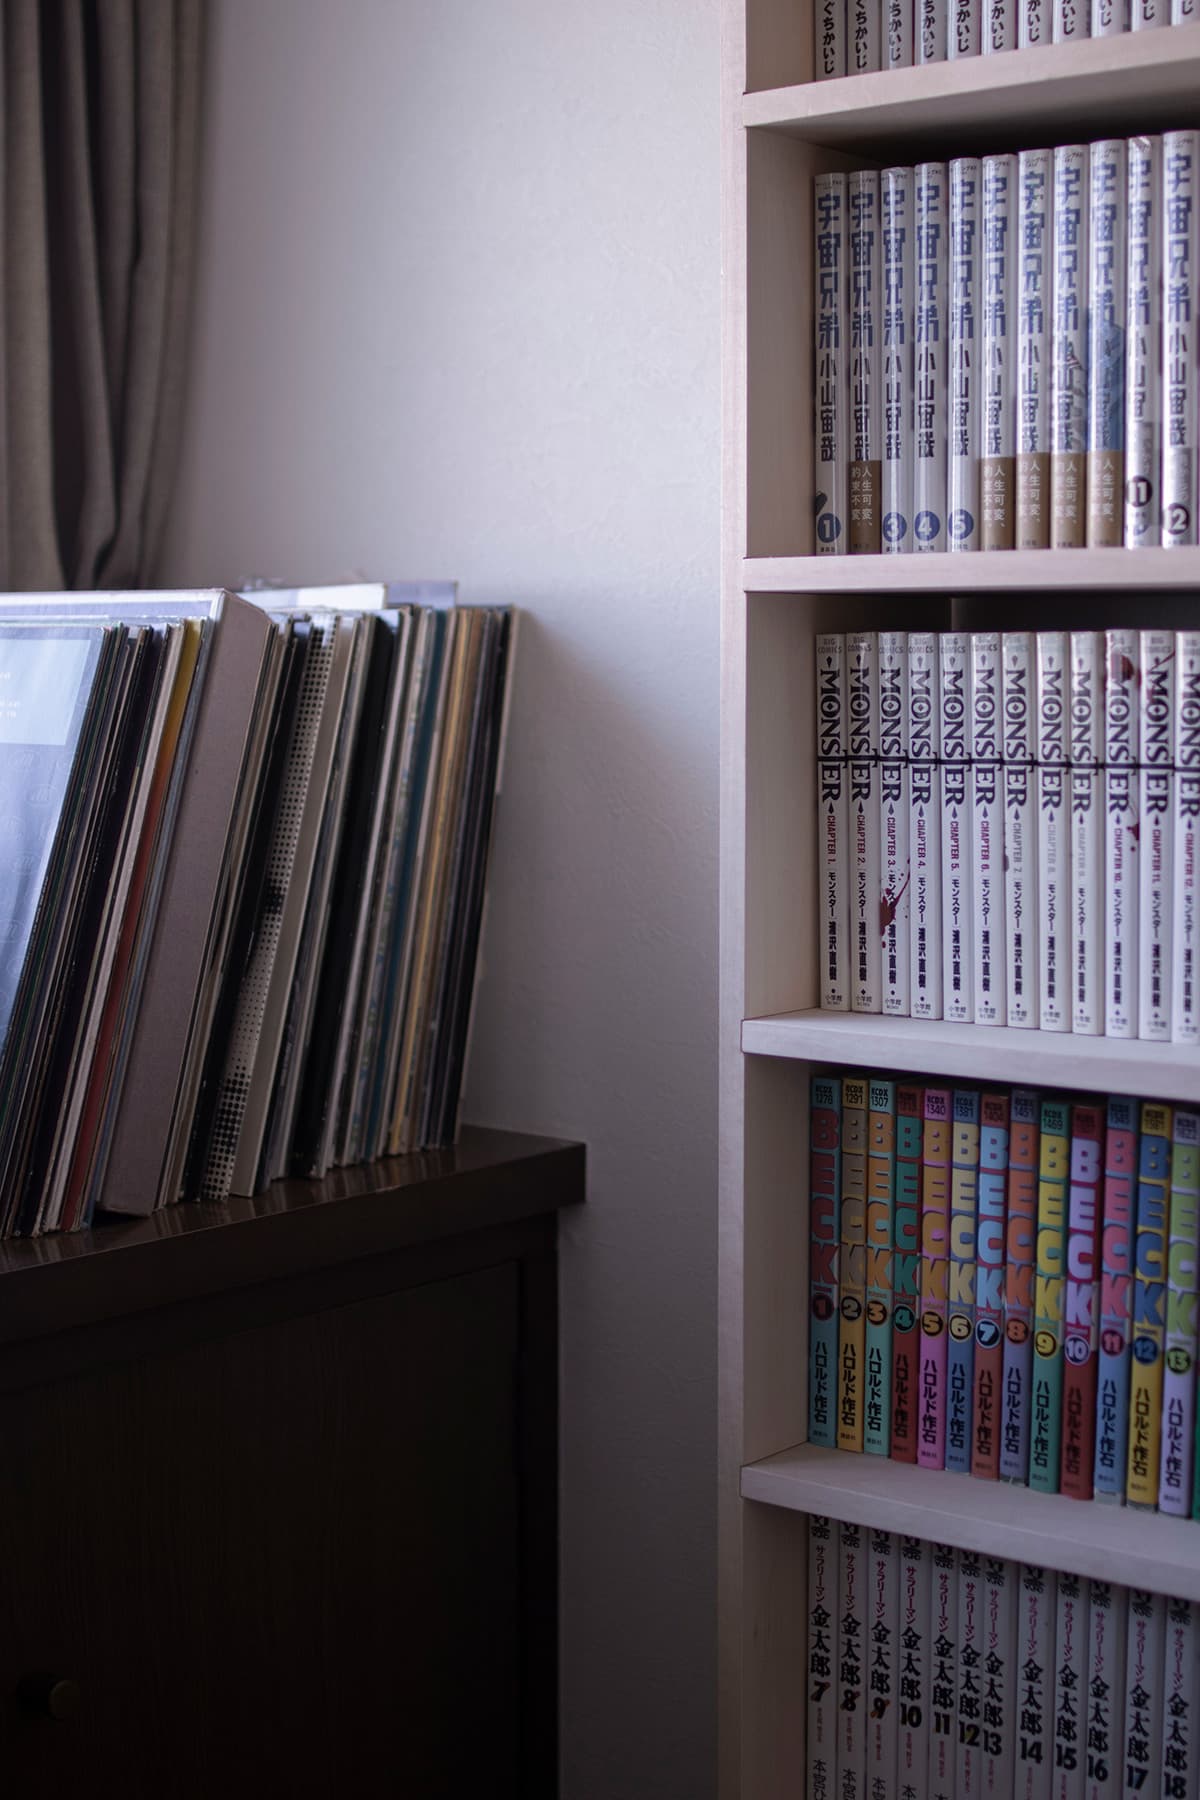 漫画本全集による整然とした本棚 壁一面のコミック本棚 